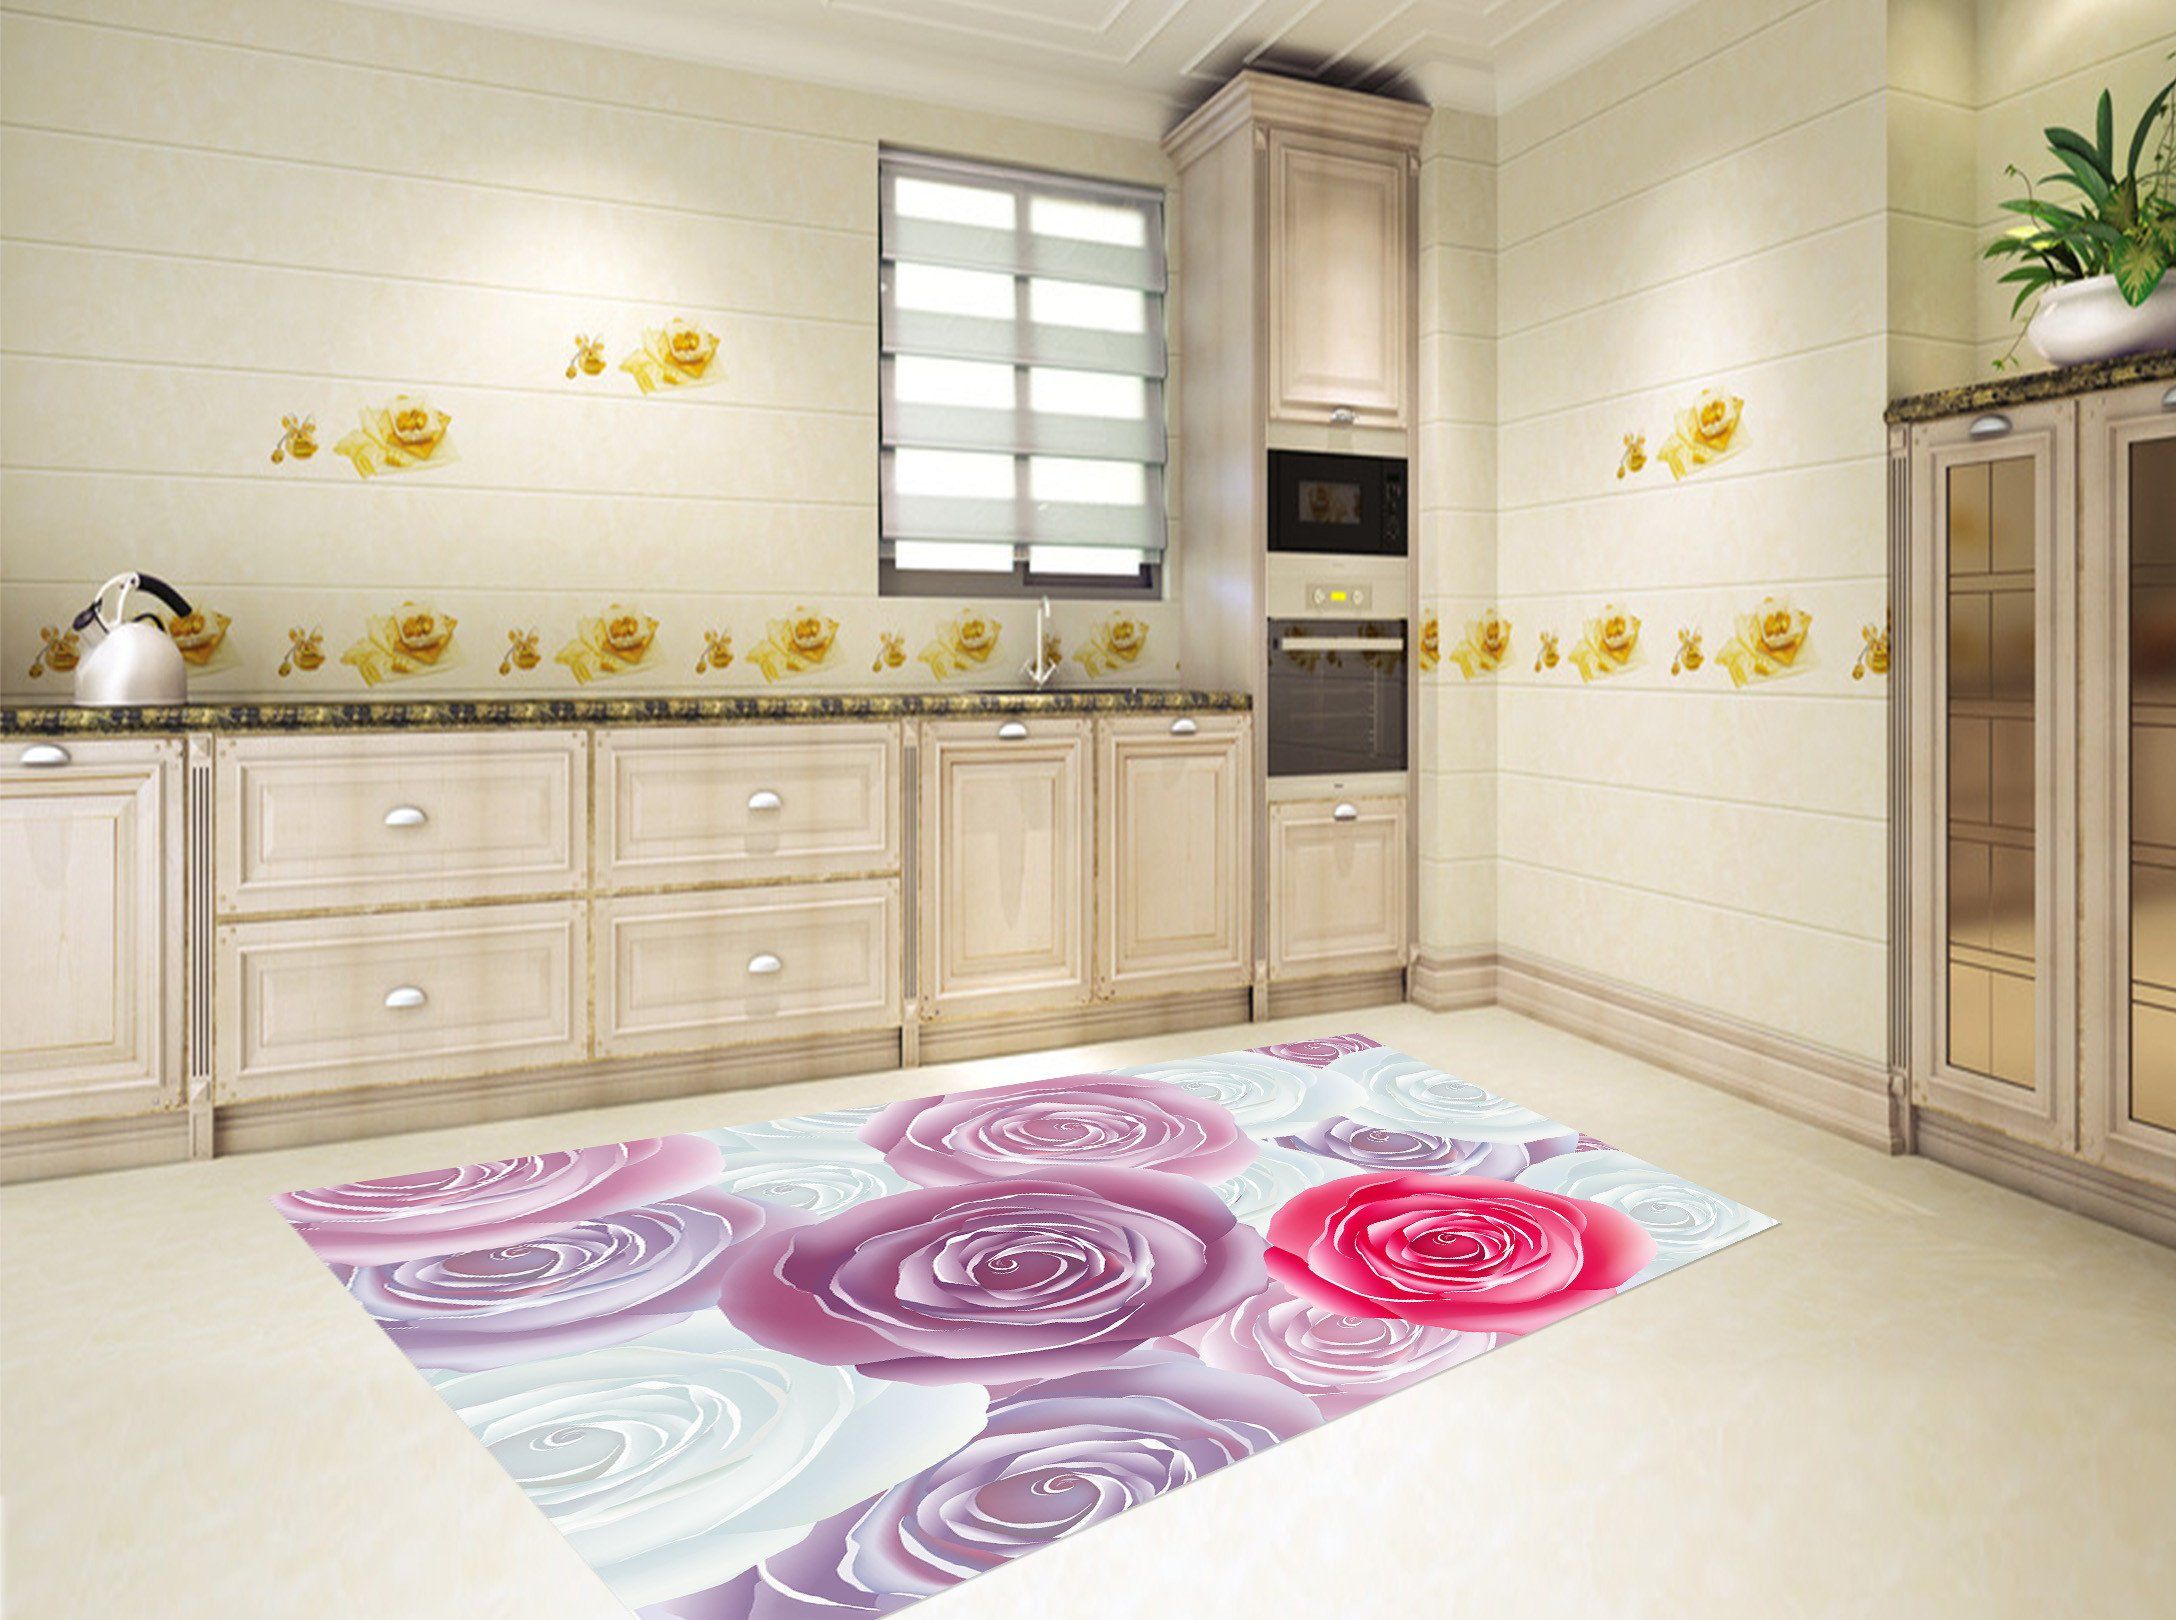 3D Flowers Pattern 521 Kitchen Mat Floor Mural Wallpaper AJ Wallpaper 